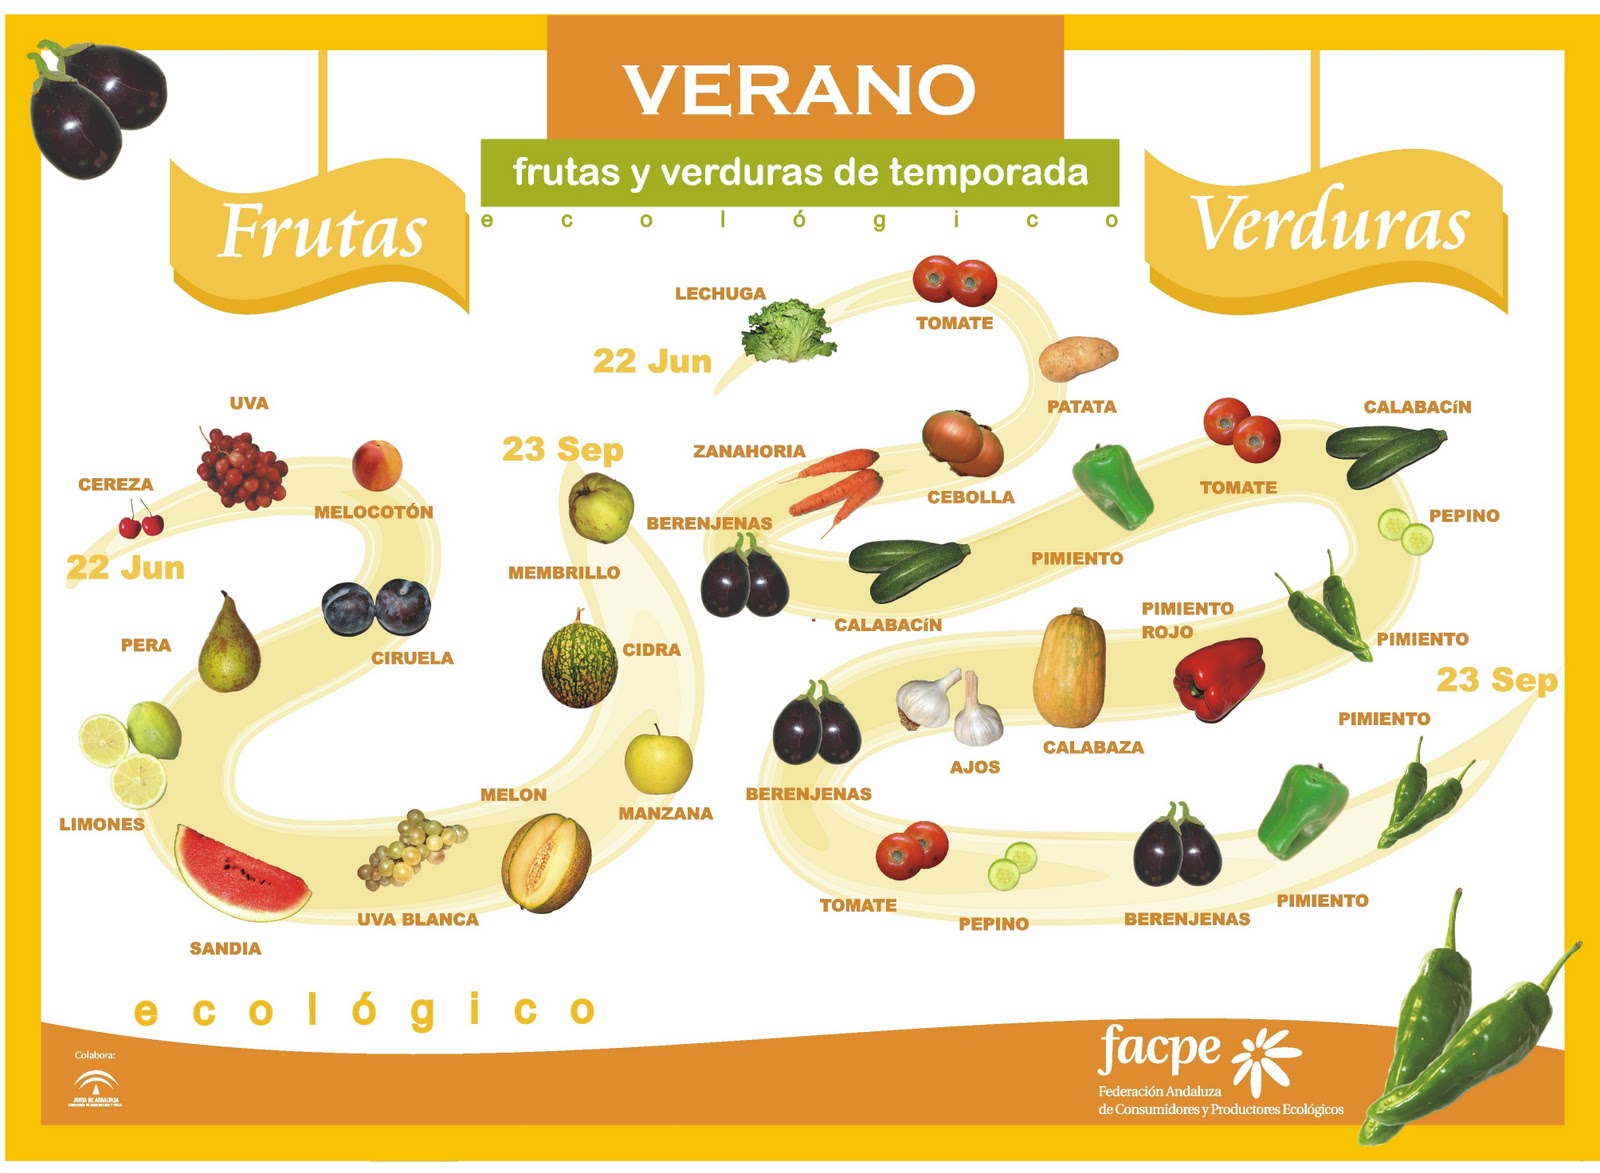 images Frutas y Verduras Verano1 - Alimentos de temporada (frutas y verduras)